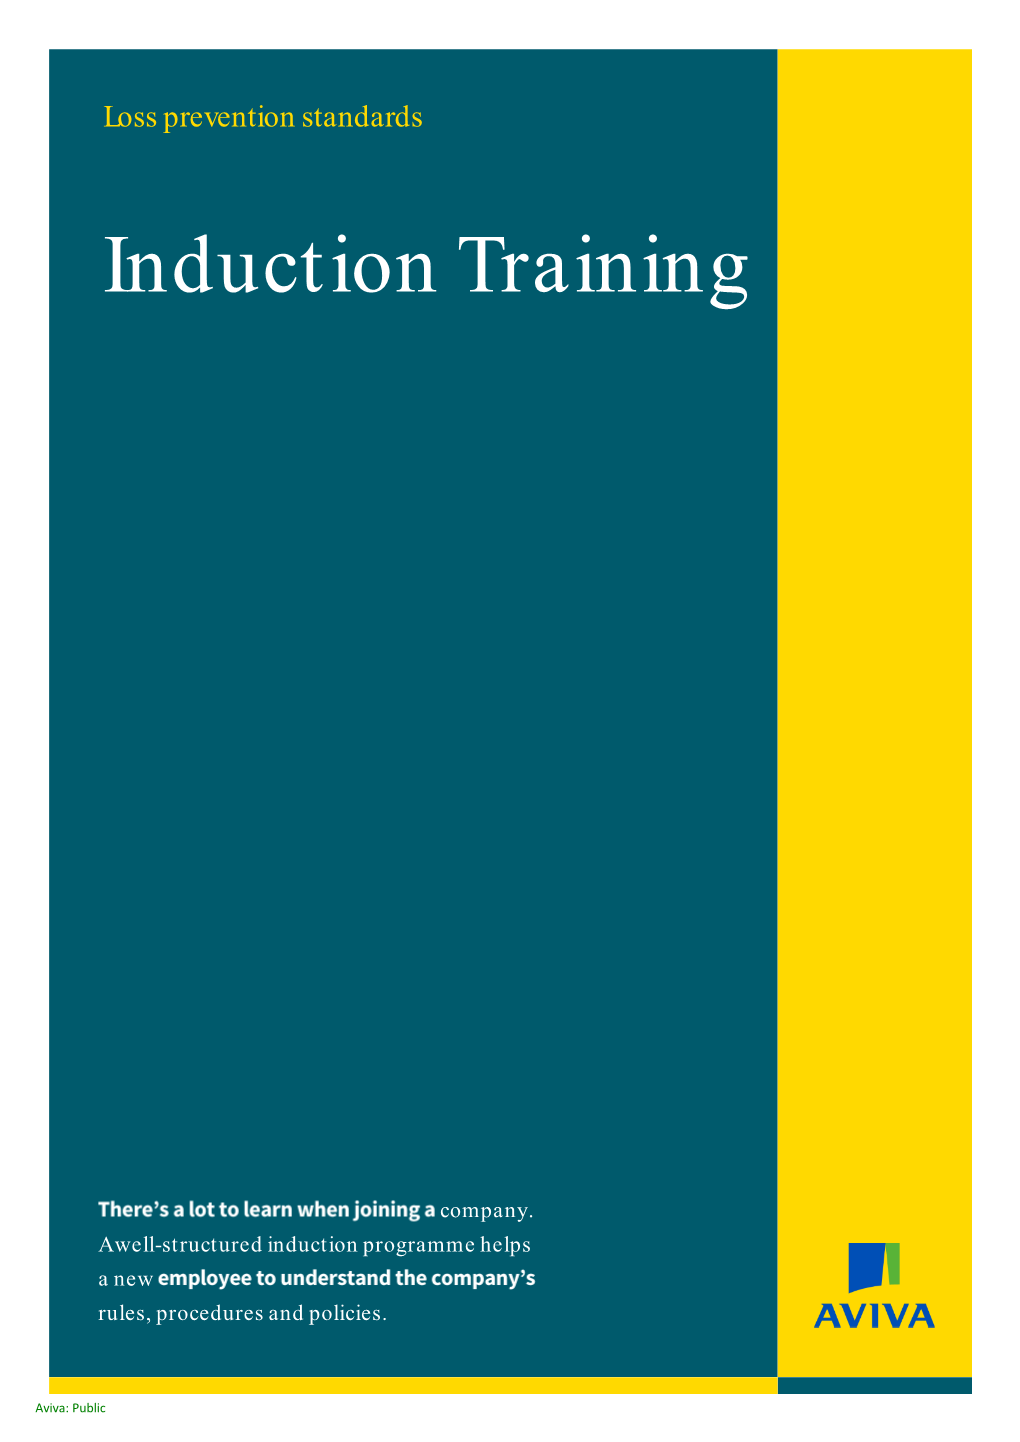 Induction Training